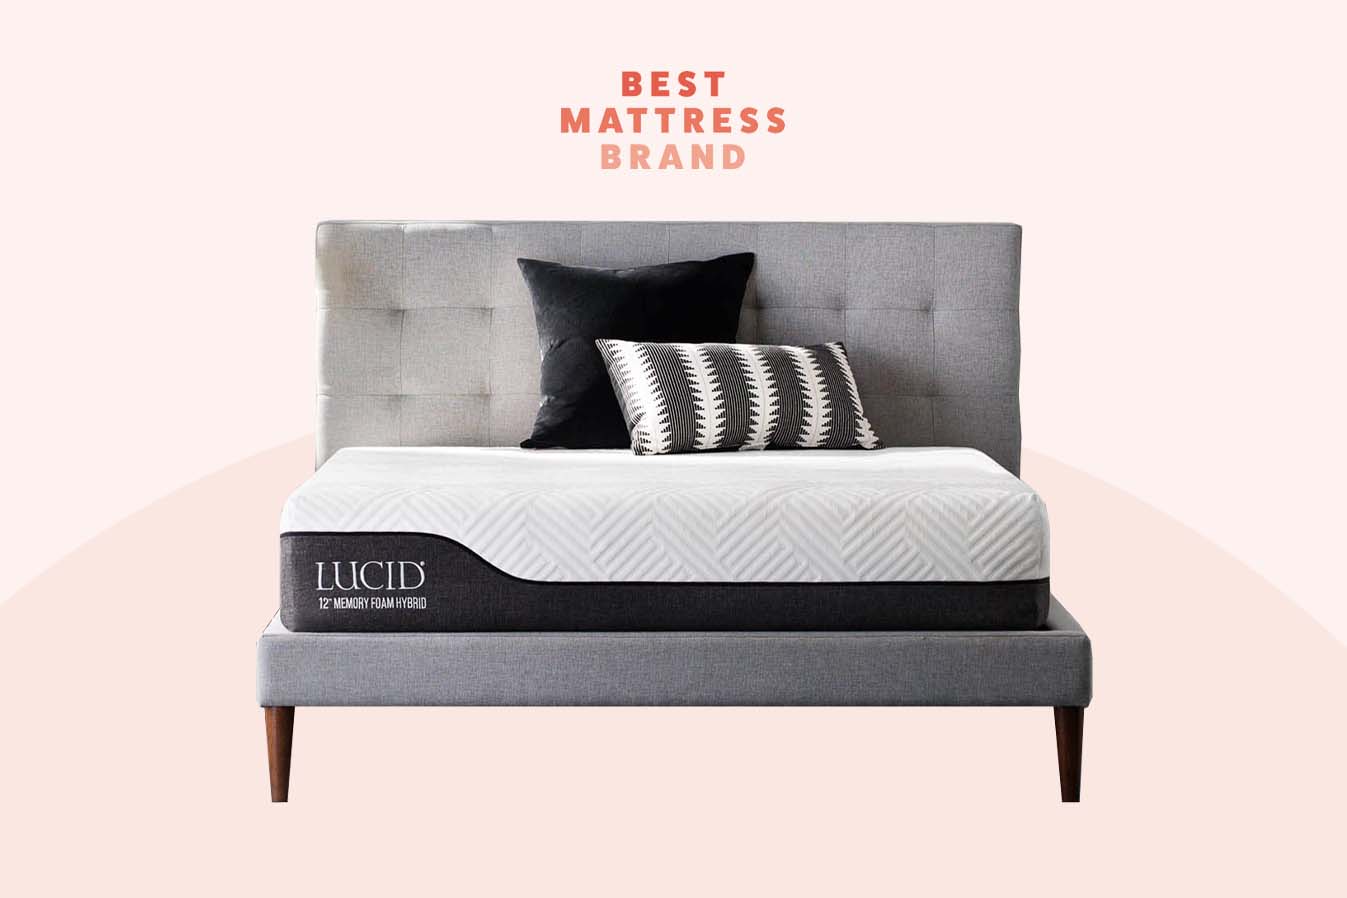 best hybrid mattress